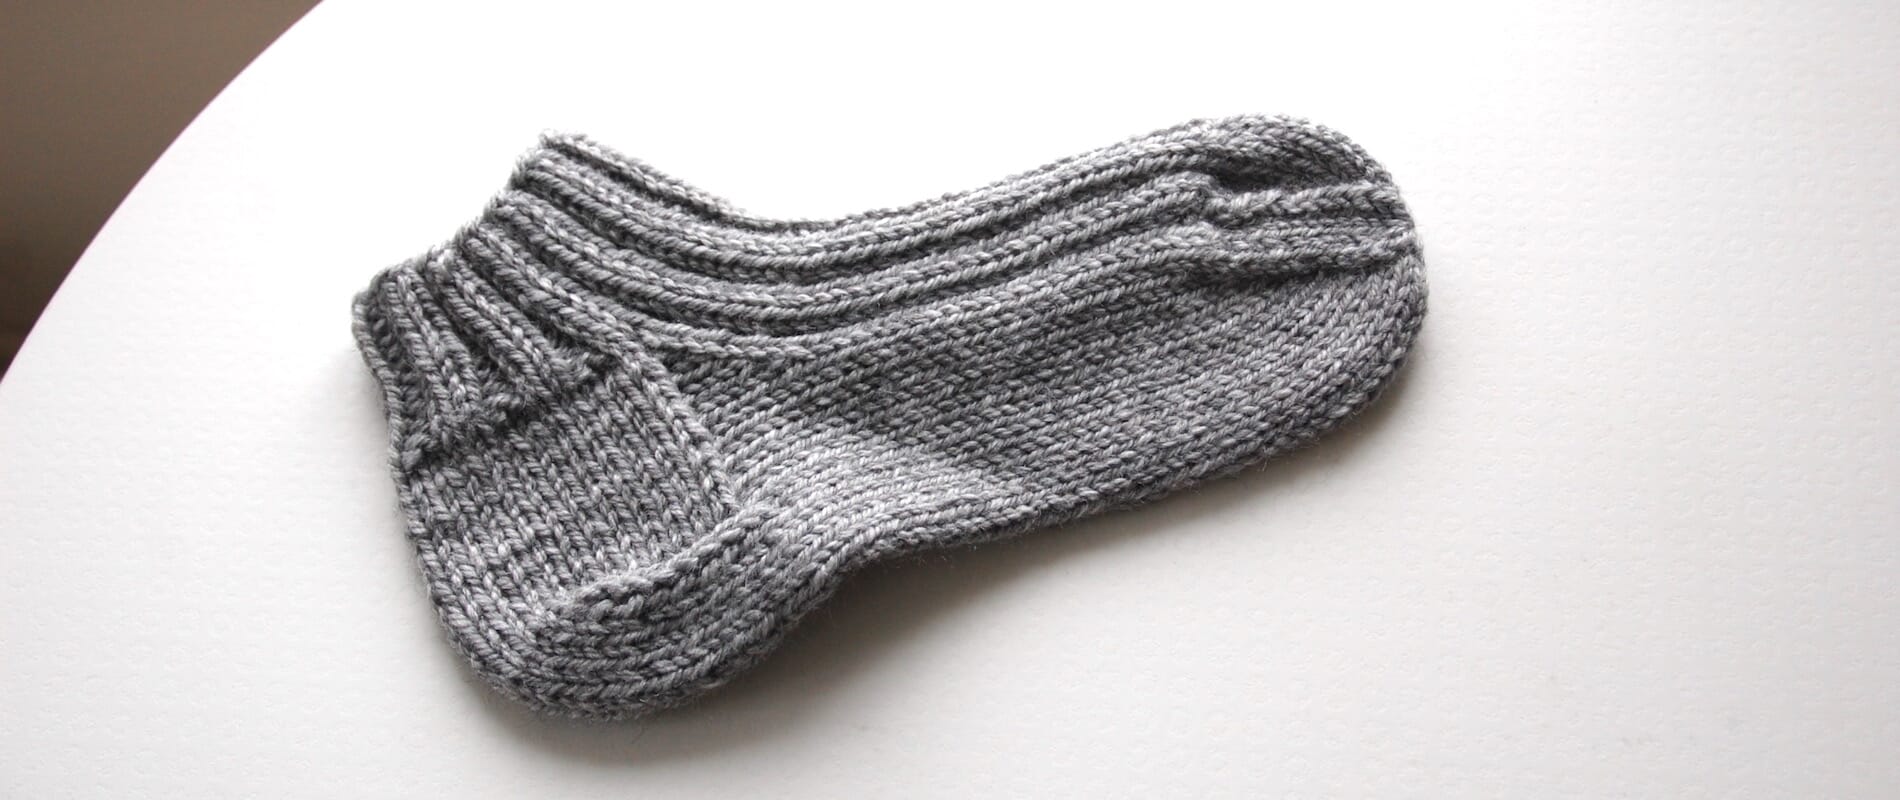 å strikke sokke-hæl ! - Kurs Spirit strikk&garn fint garn, design og strikketilbehør